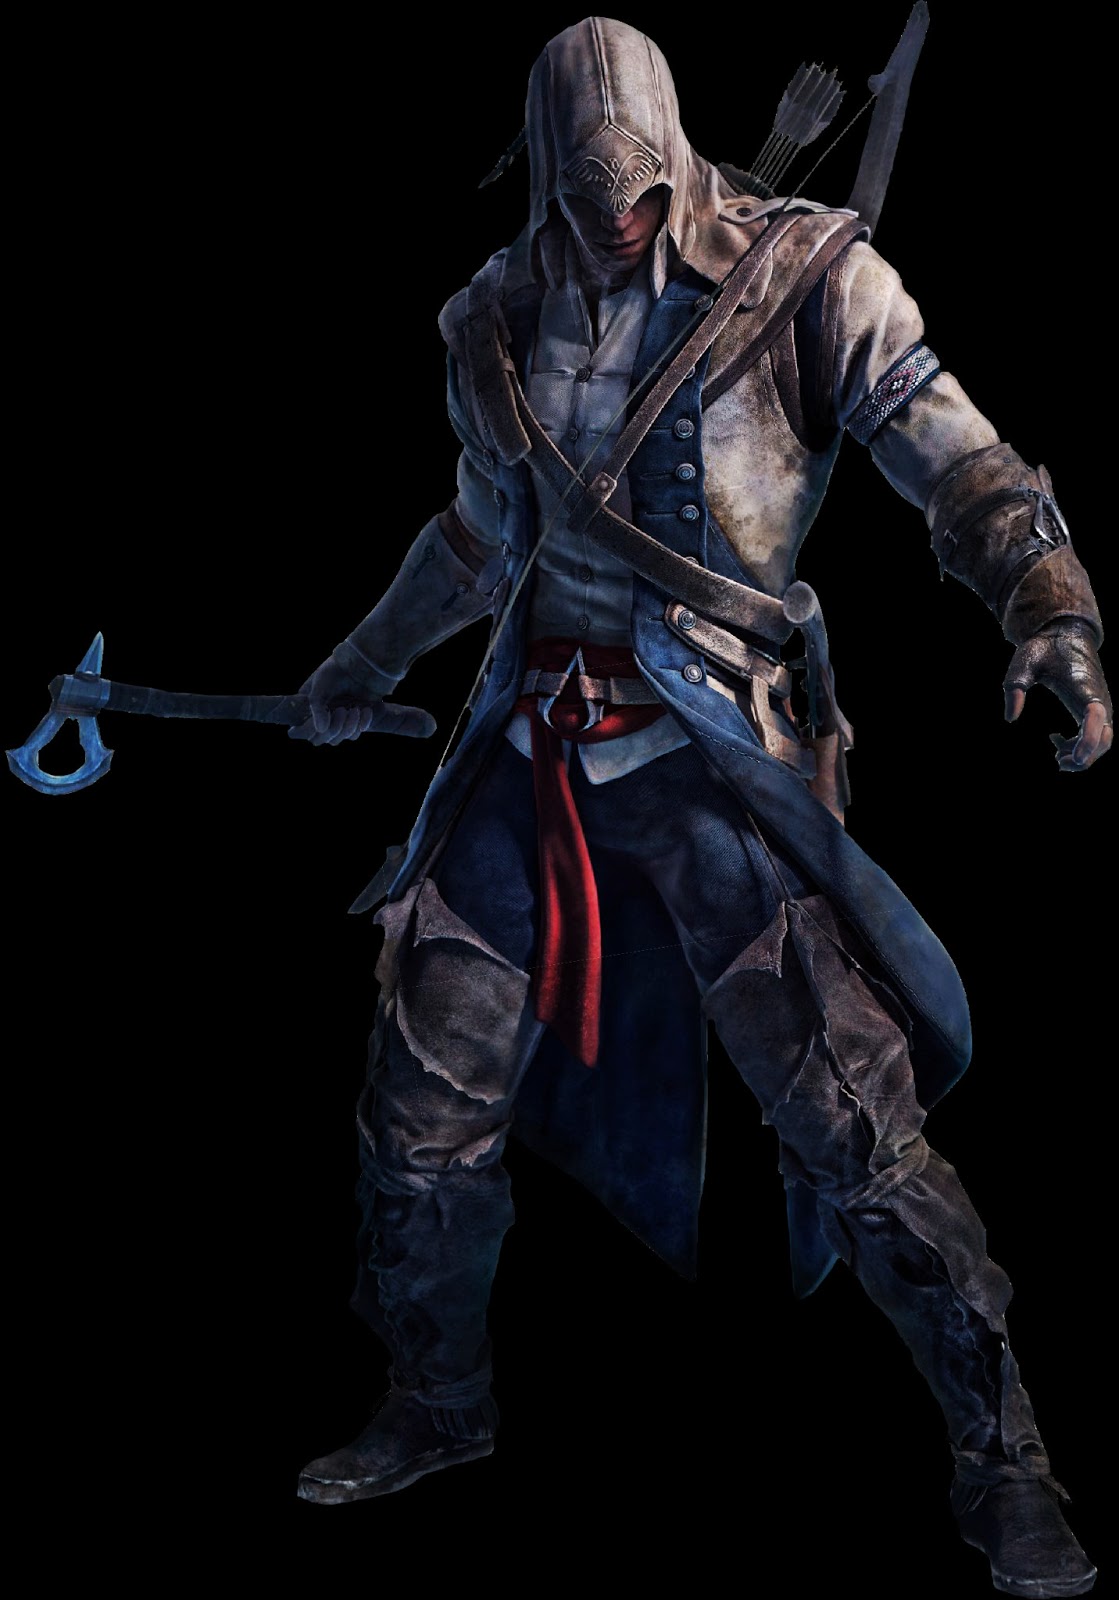 Lesionarse Brillar Acompañar Cris Patches!: Como hacer disfraz (Traje) Assassin's Creed 3, Connor.